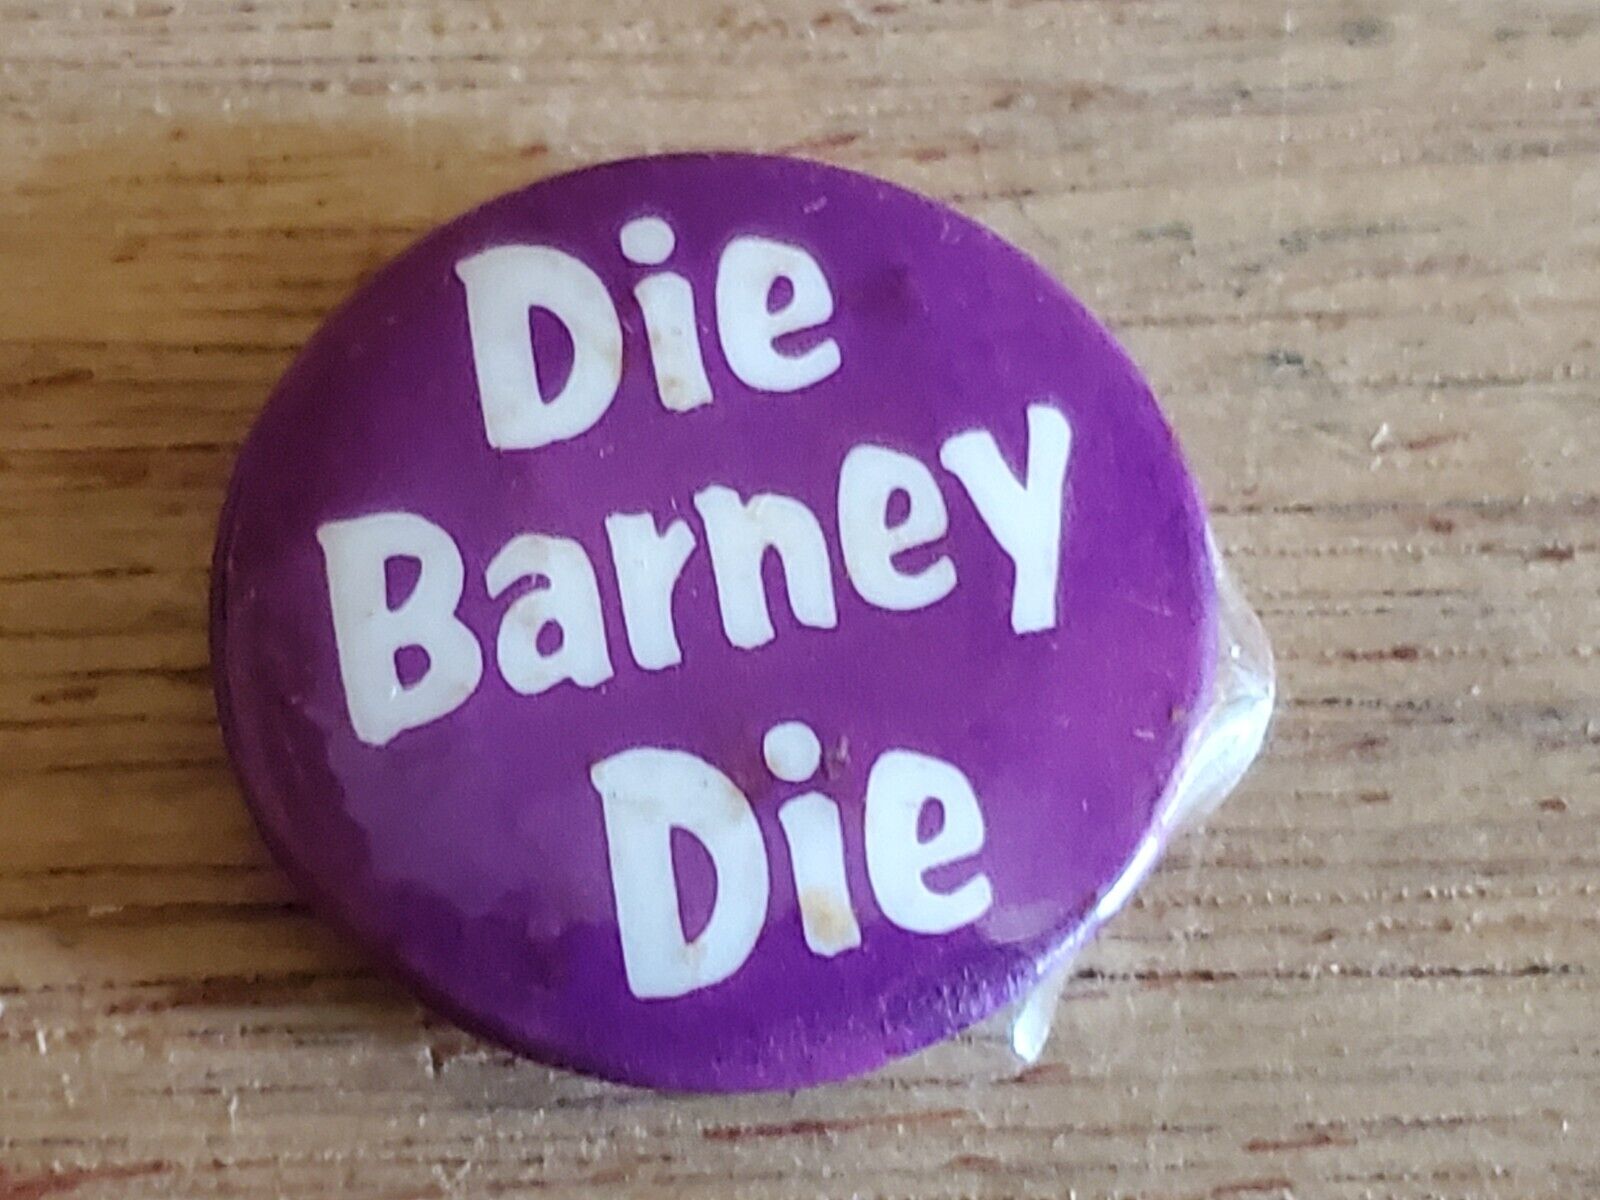 Die BARNEY Die Funny Badge Humorous Button PIn Pinback Vintage AS IS